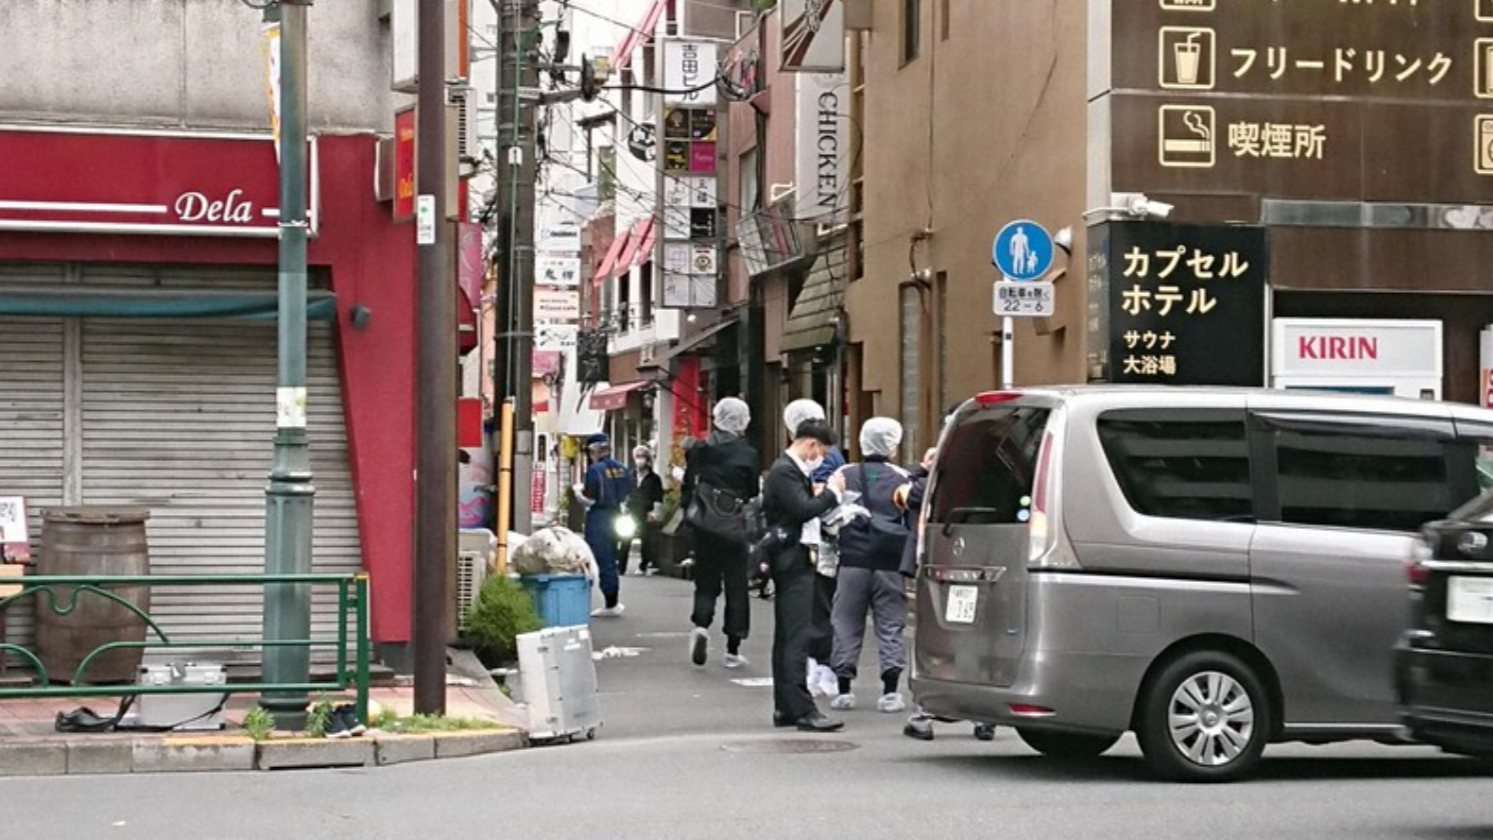 Đắk Lắk: Tro cốt của cô gái tử vong bất thường trên đường phố Tokyo đã được đưa về nhà - Ảnh 1.